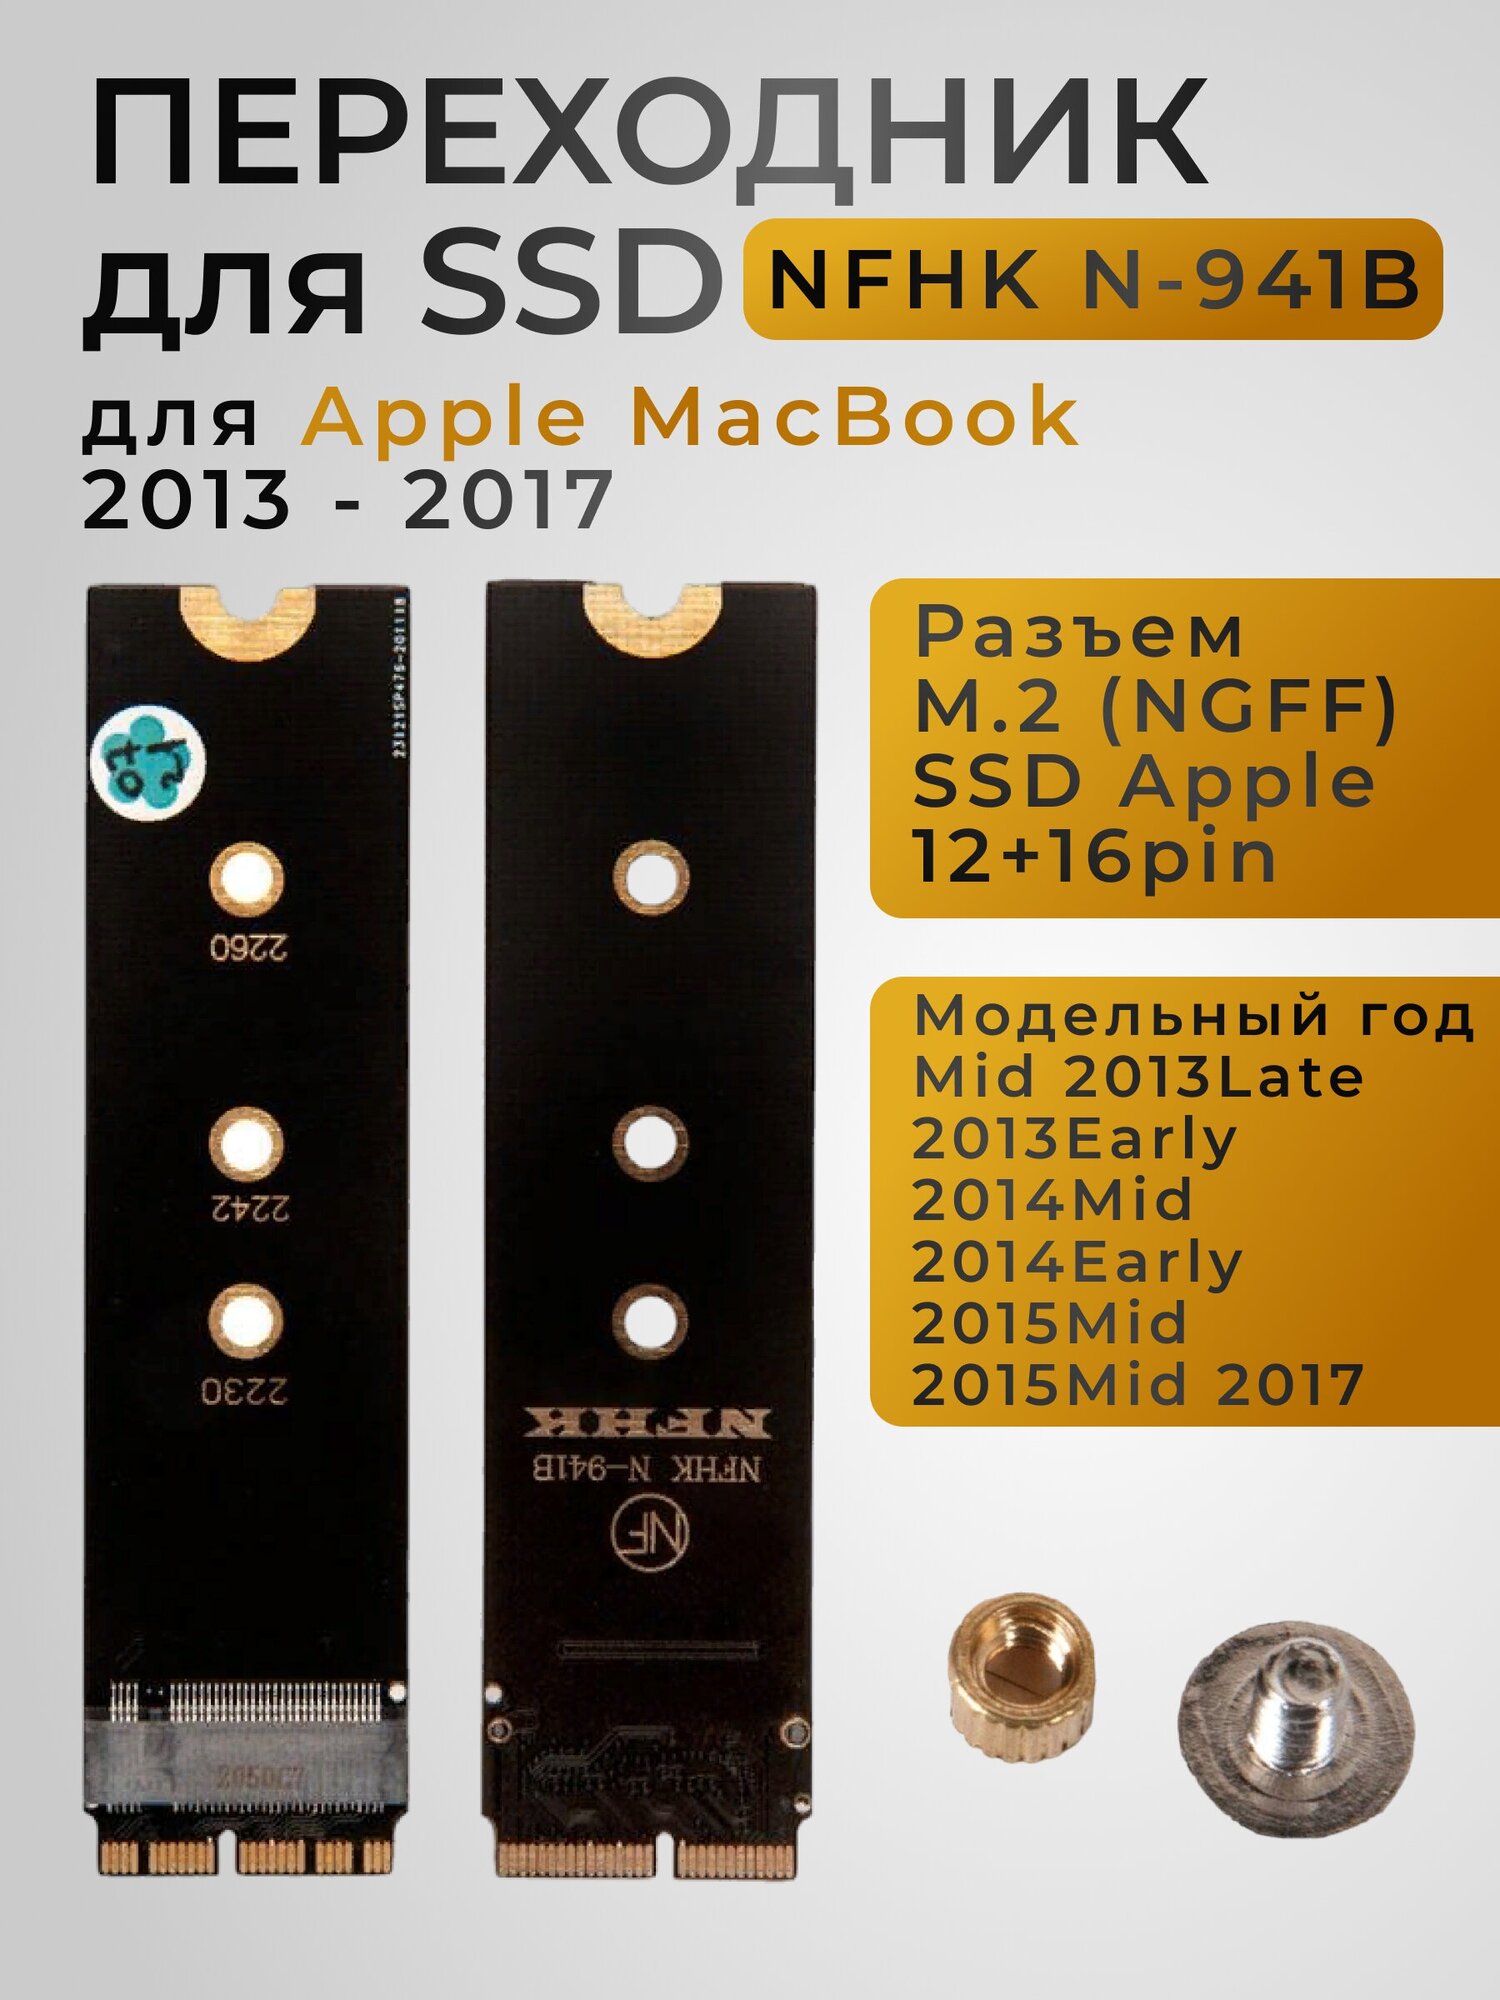 Переходник для SSD M.2 для Apple MacBook 2013 - 2017 NFHK N-941B